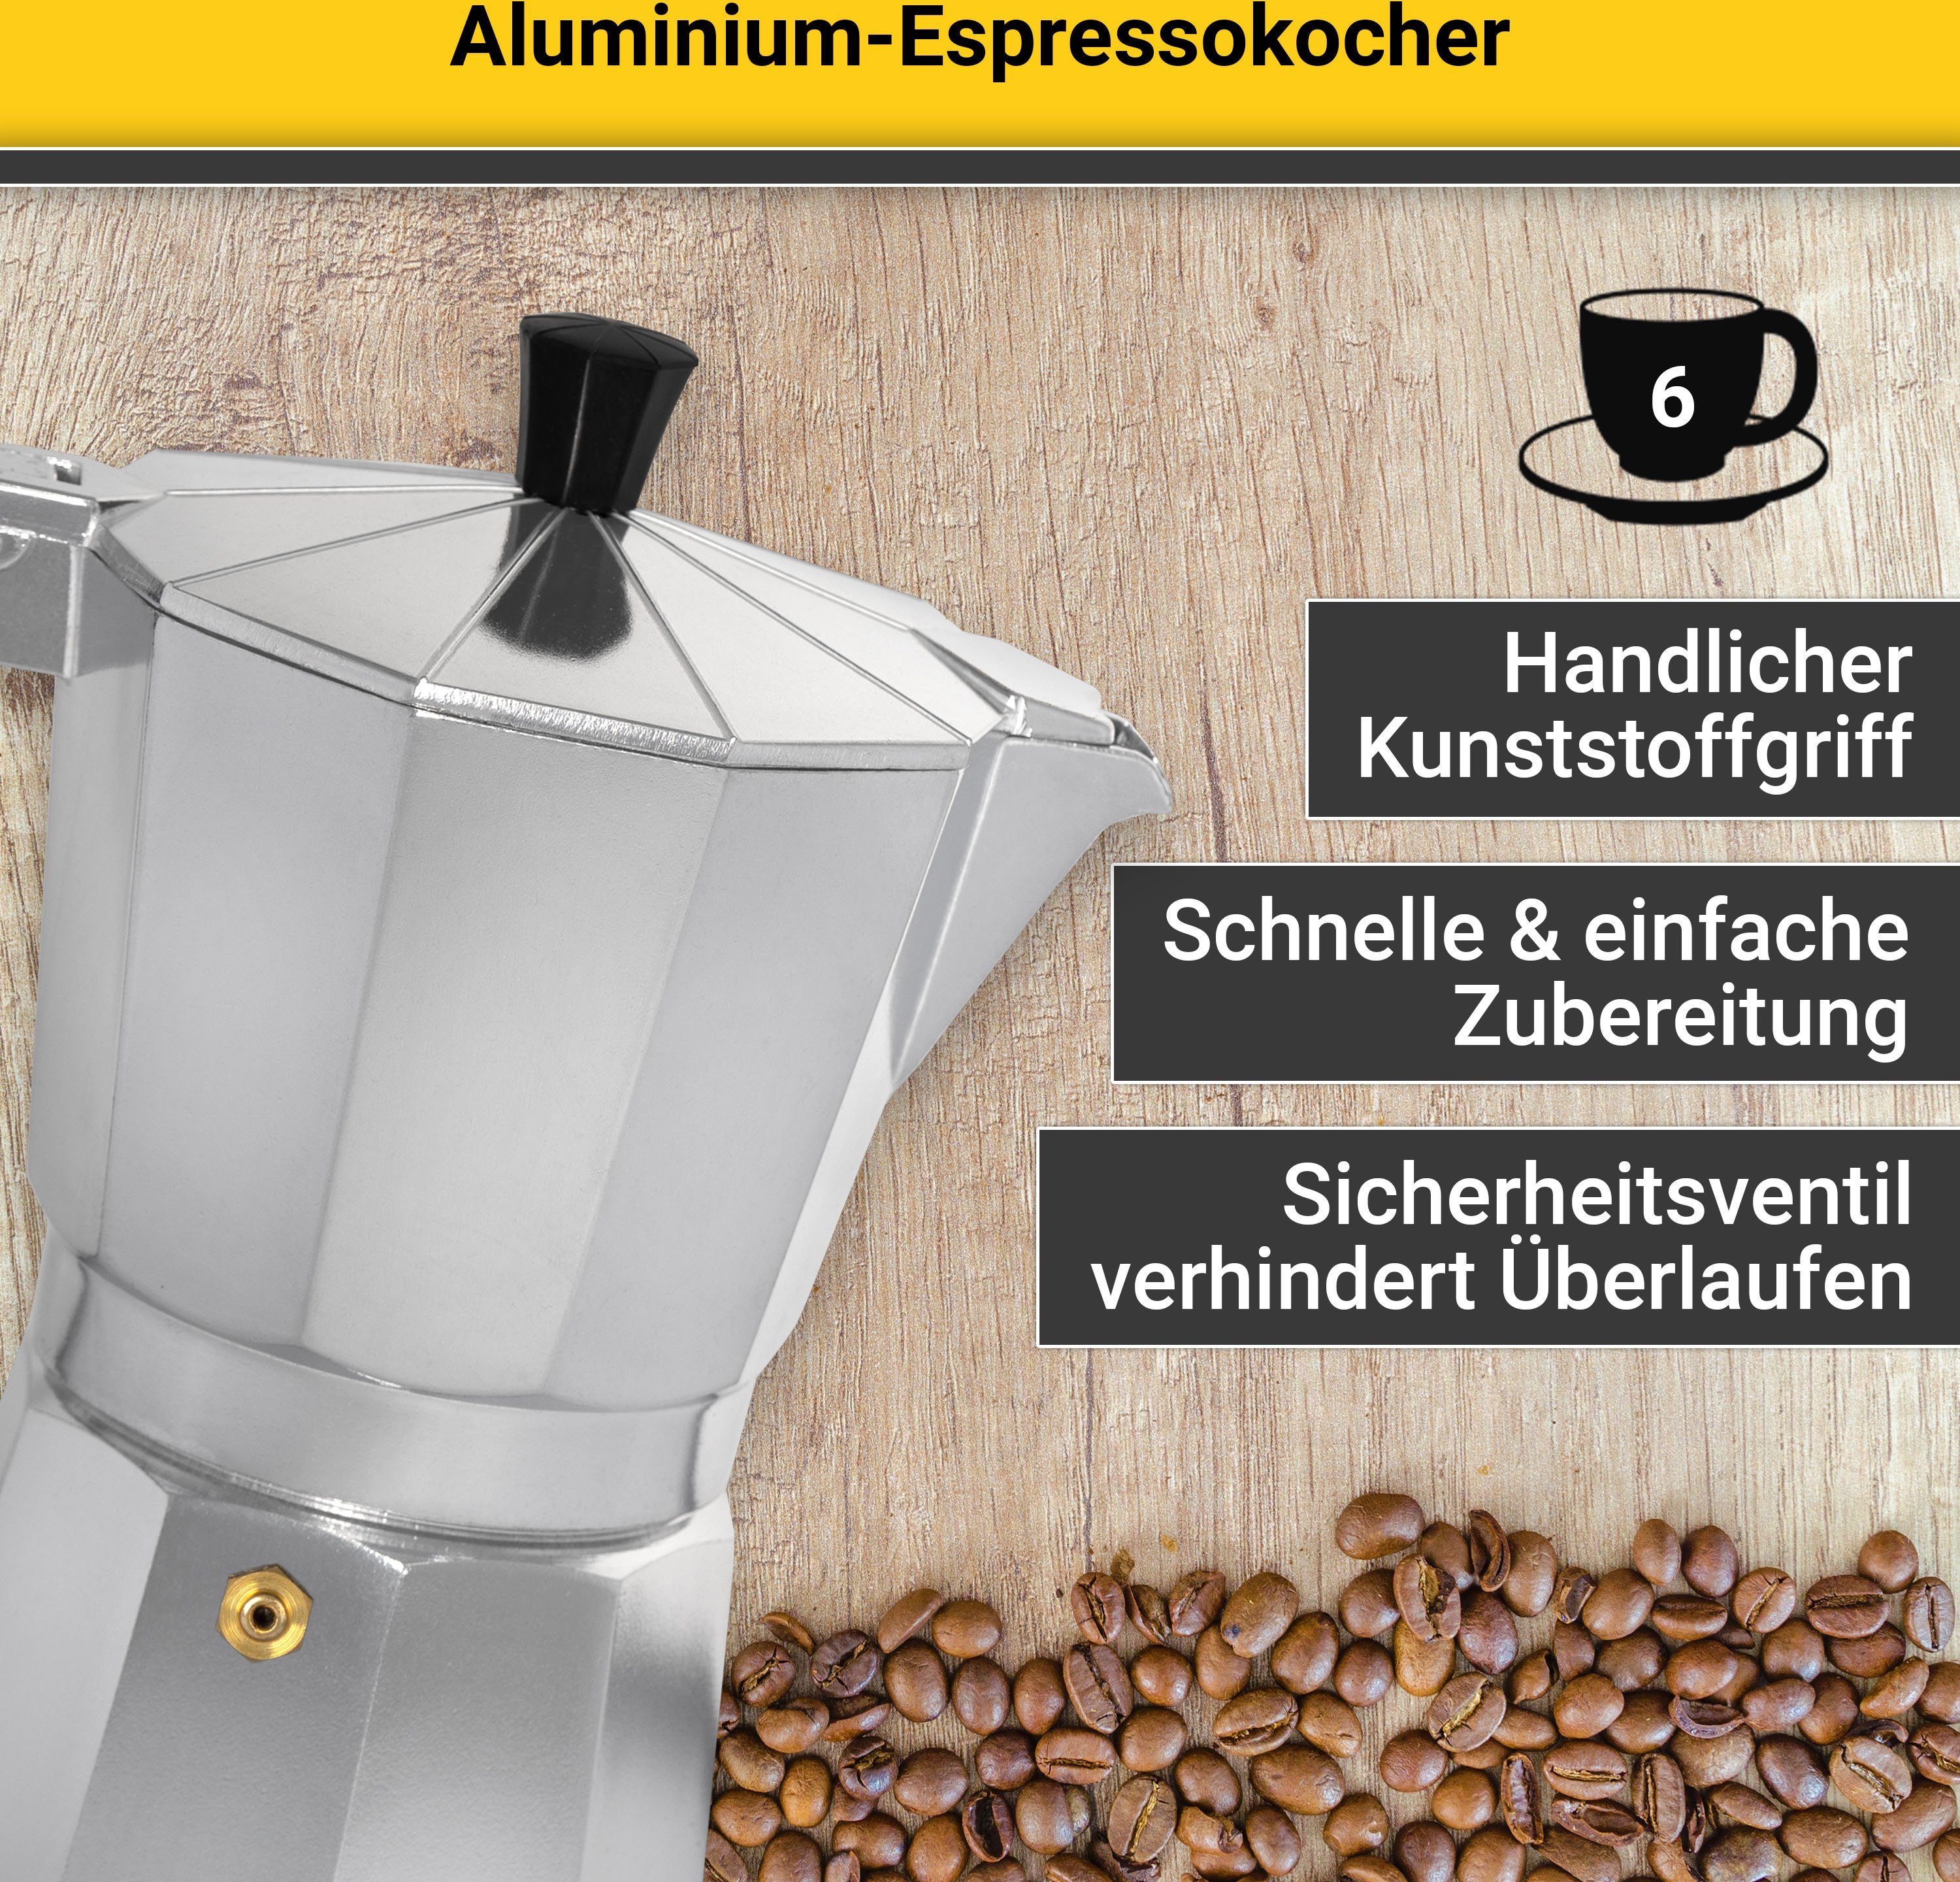 Krüger Druckbrüh-Kaffeemaschine 502, Aluminium, Kaffeebereiter für eckige für Tassen, 6 Form Tassen traditioneller in 6